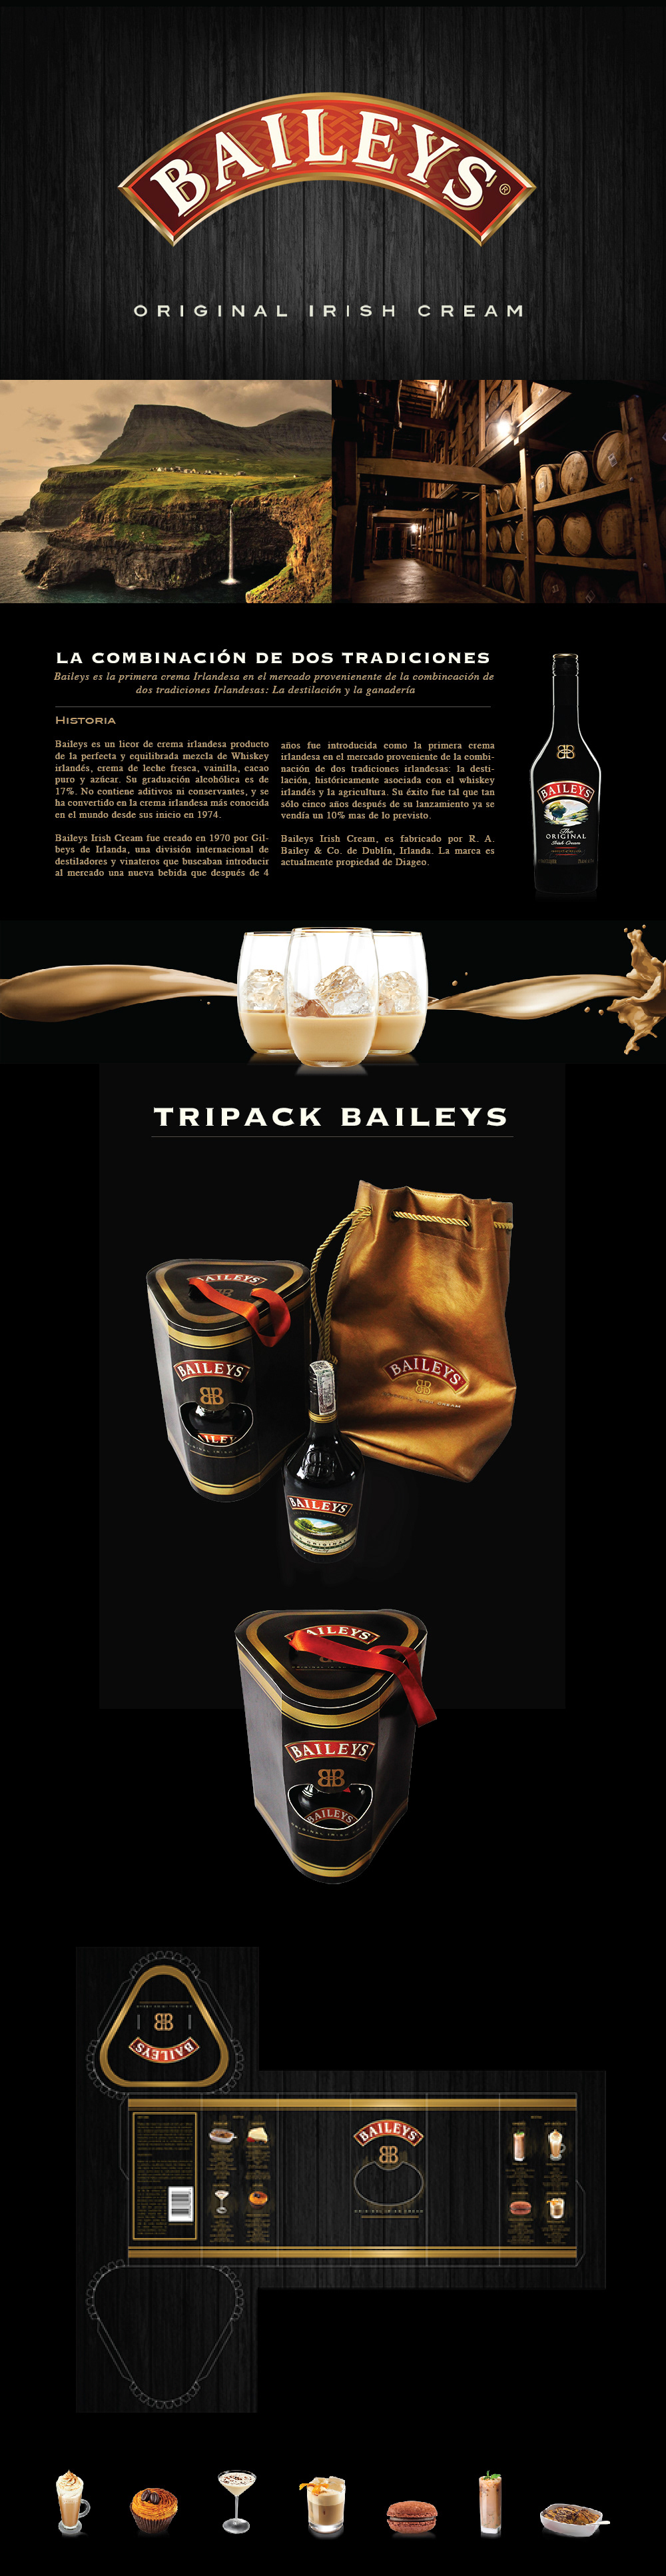 baileys package Irland Whiskey creme wood gold liquor elegant